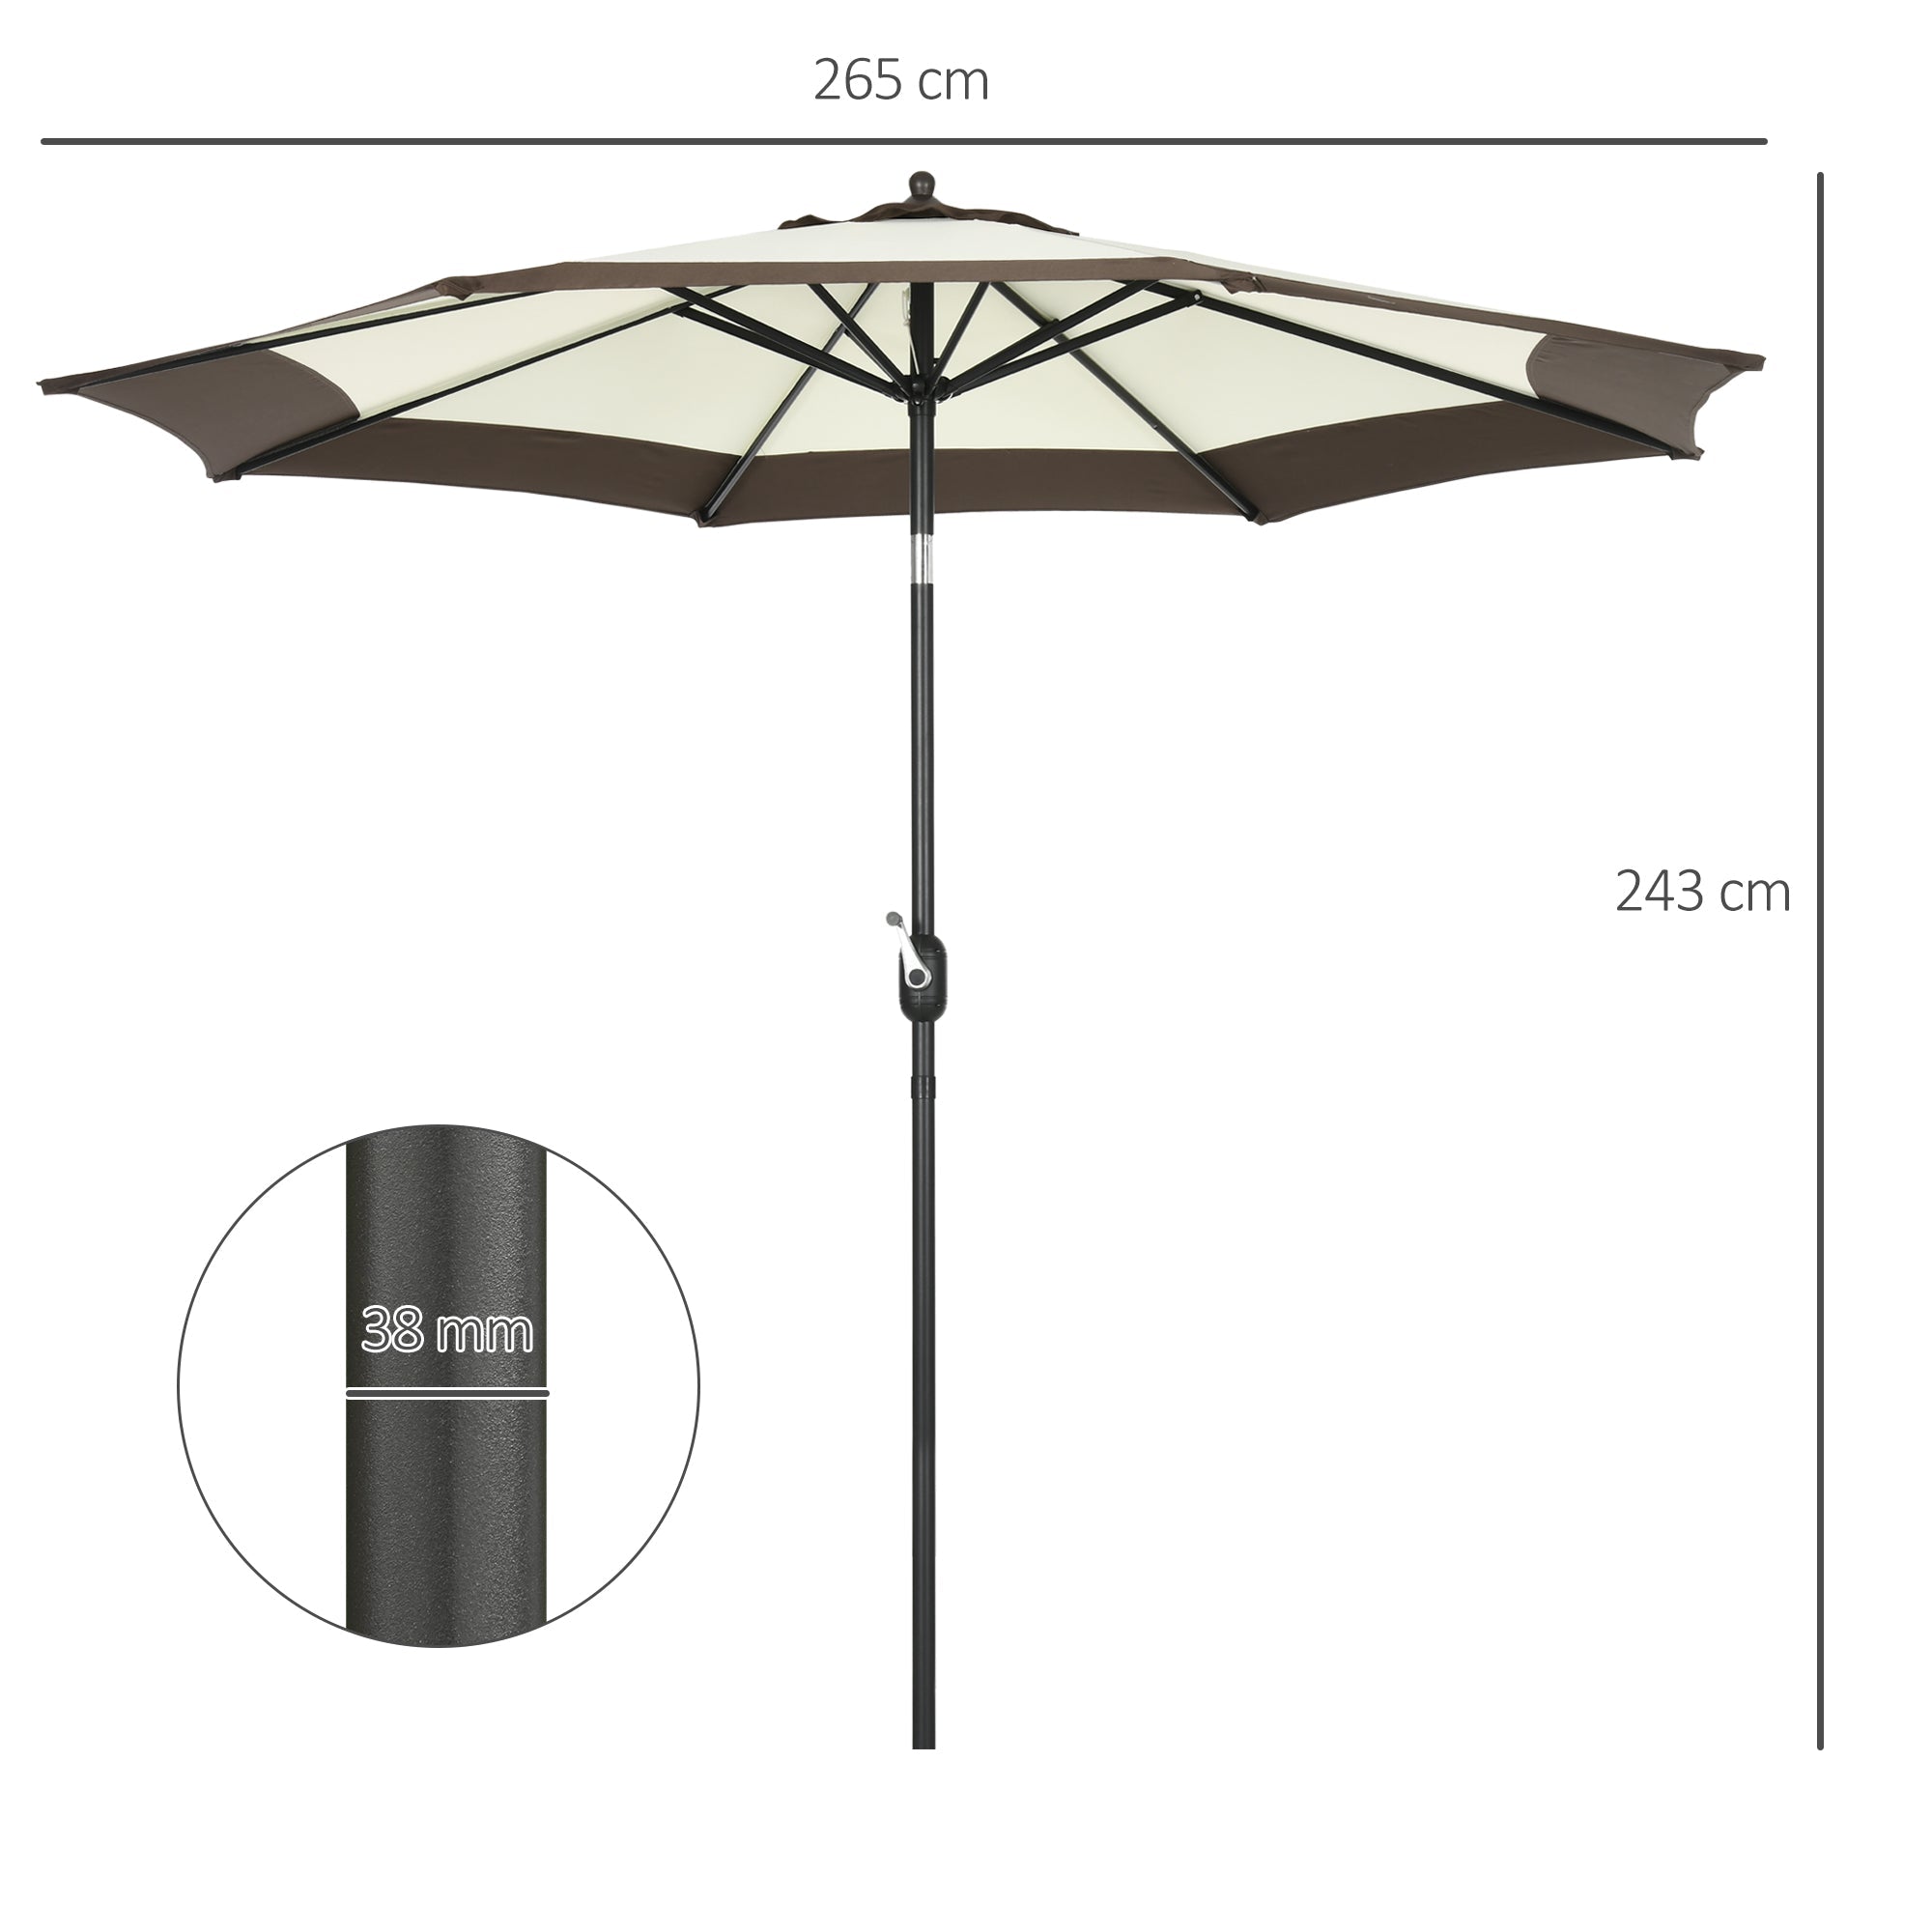 2.7m Garden Parasol Umbrella with 8 Metal Ribs, Tilt and Crank, Outdoor Sunshades for Garden, Patio, Beach, Yard, Coffee-2